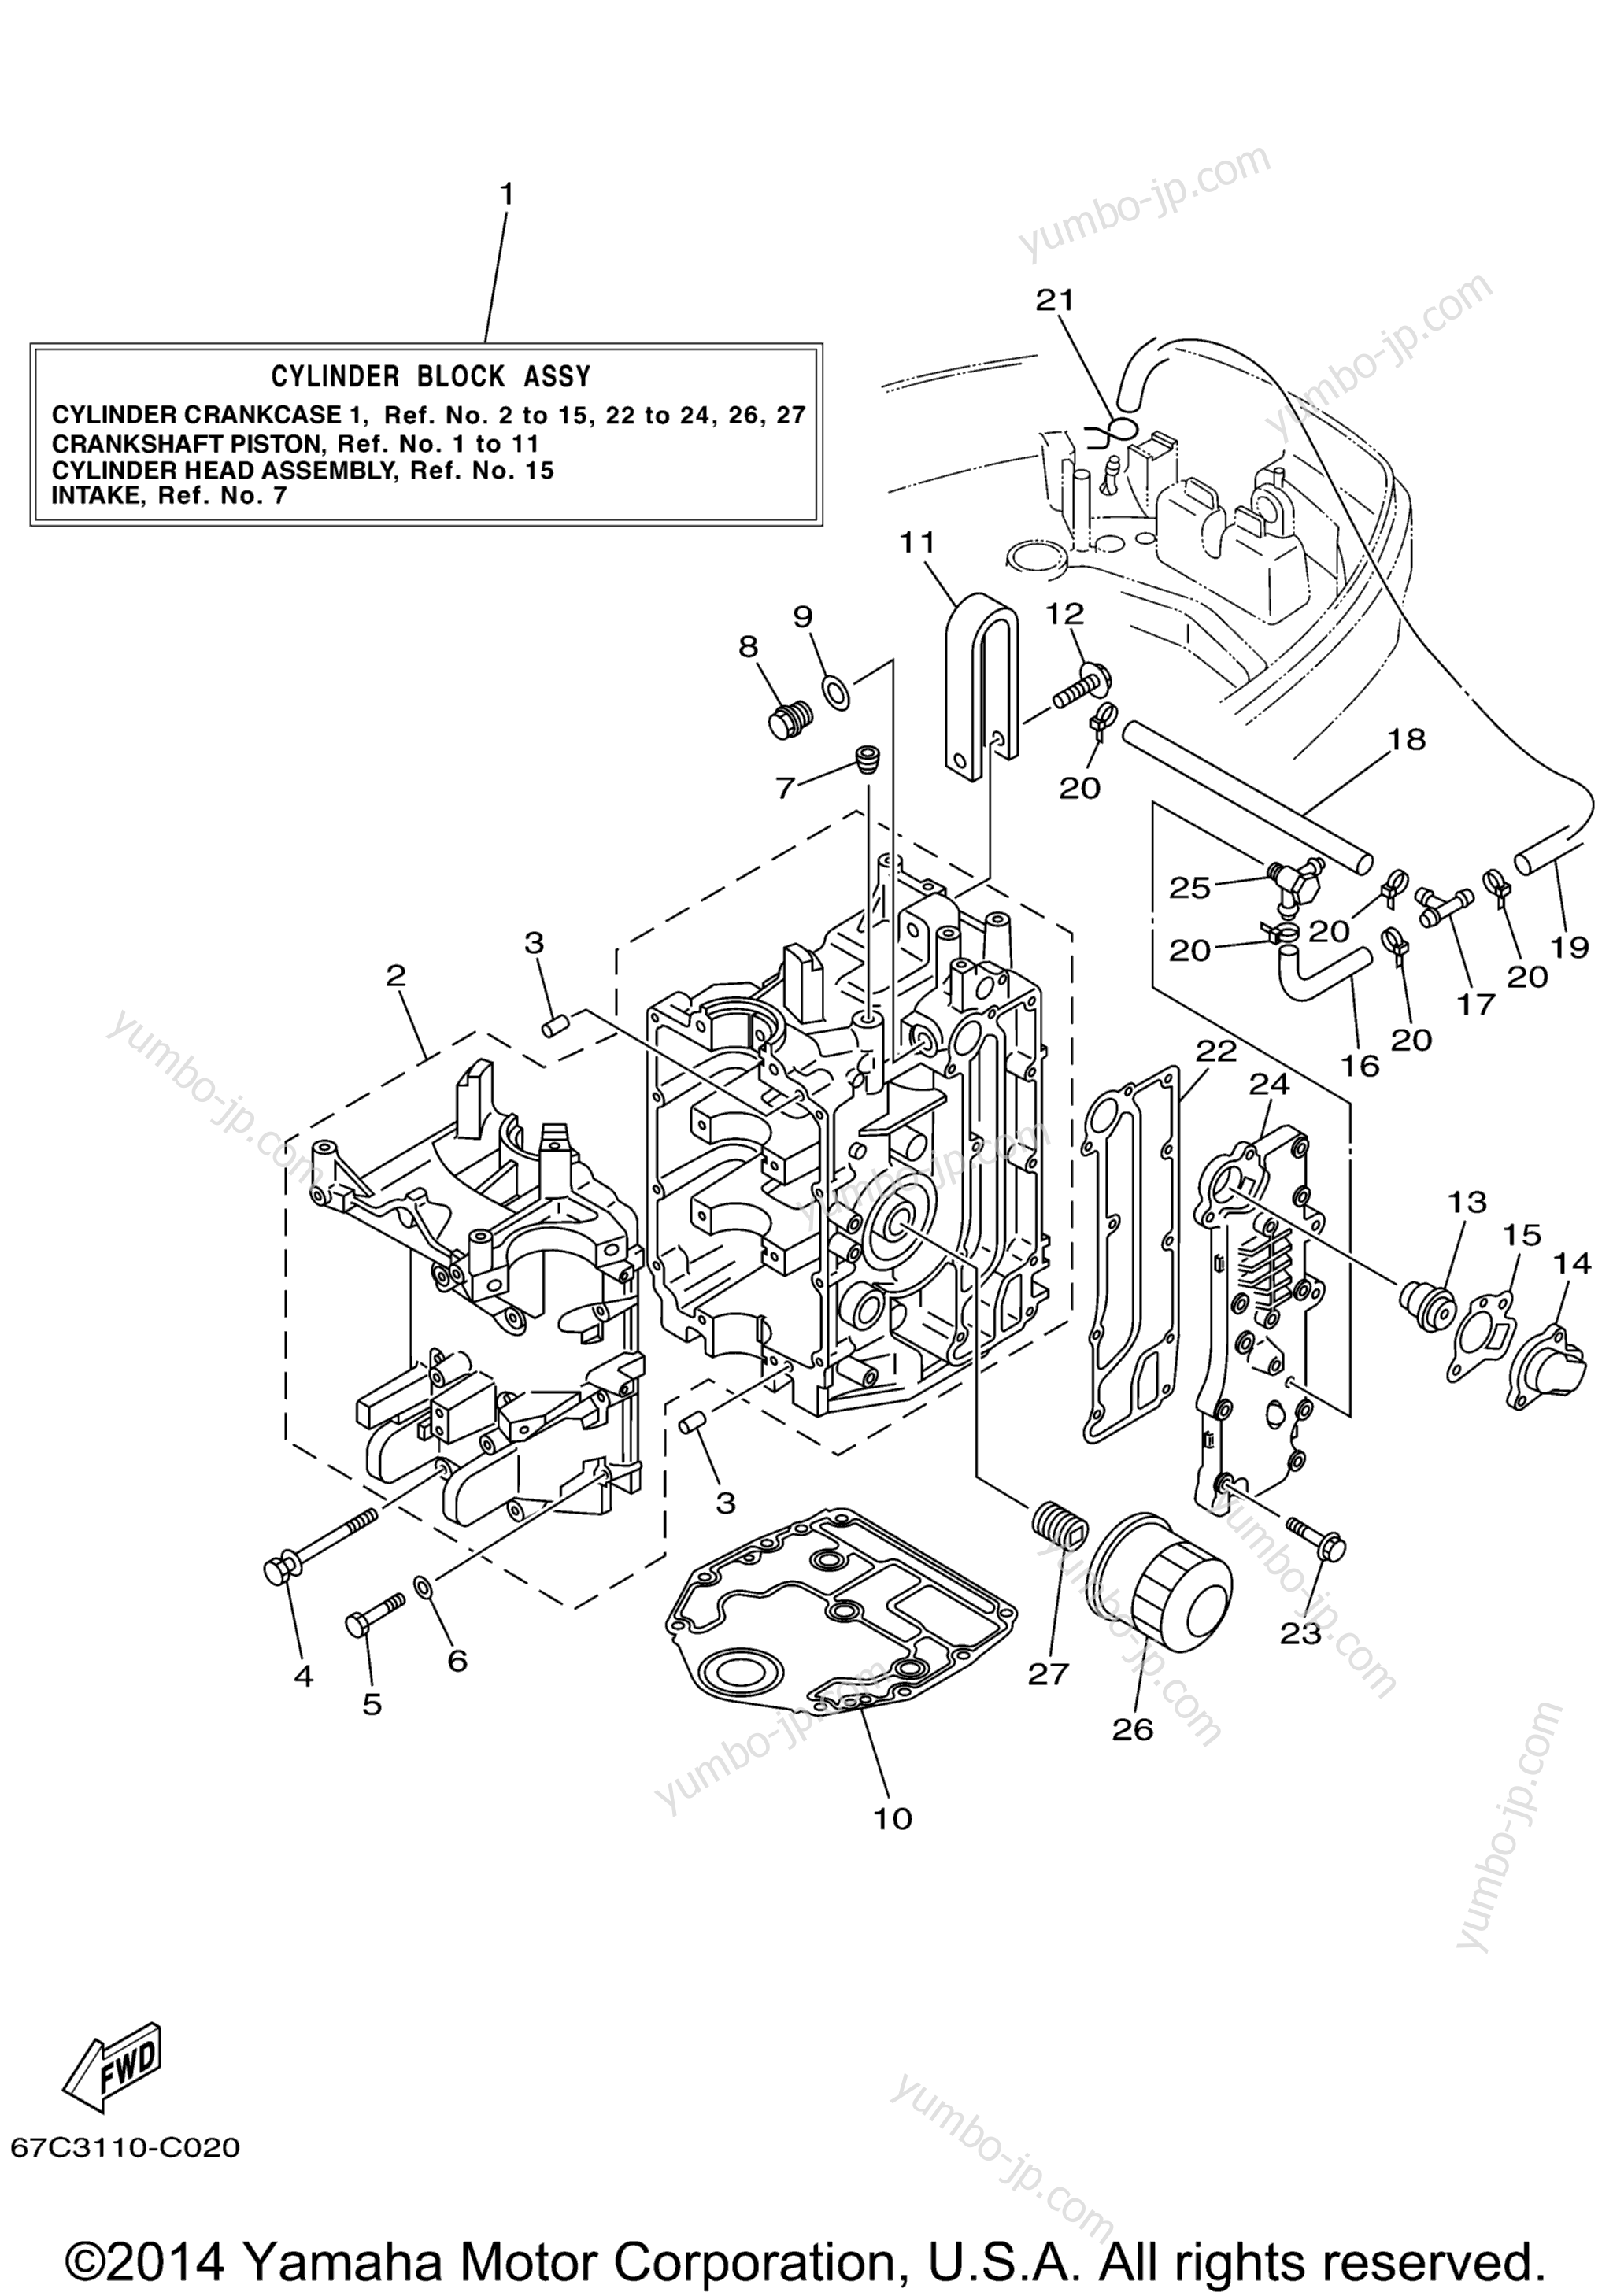 Cylinder Crankcase 1 для лодочных моторов YAMAHA F40TLRD_MSHD_MLHD_MJHD_ELRD (F40EJRD) 2005 г.